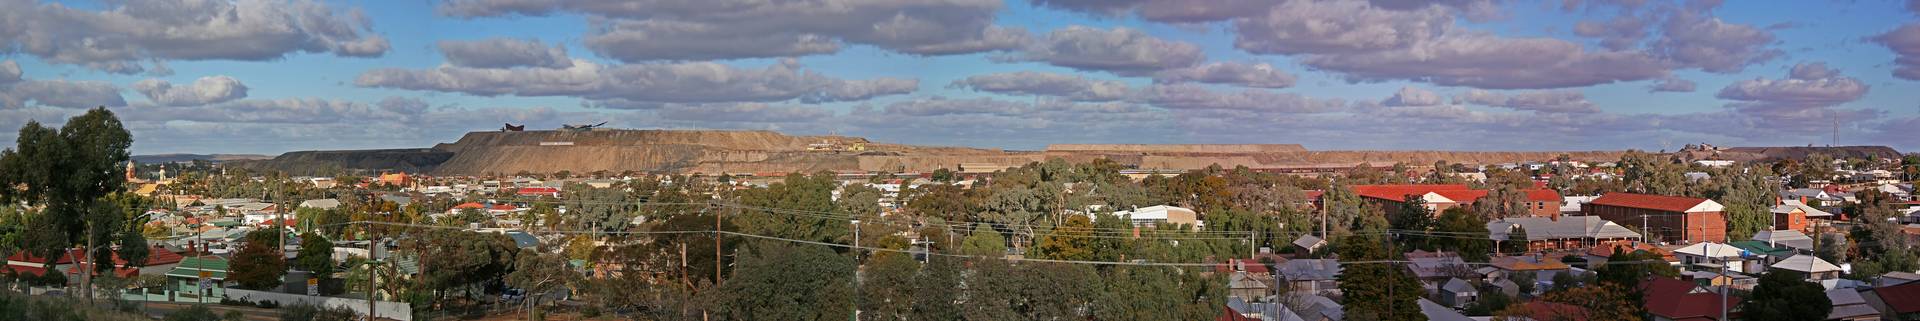 Панорама г. Брокен-Хилл, одного из крупнейших горнодобывающих центров Австралии, места добычи полиметаллических руд